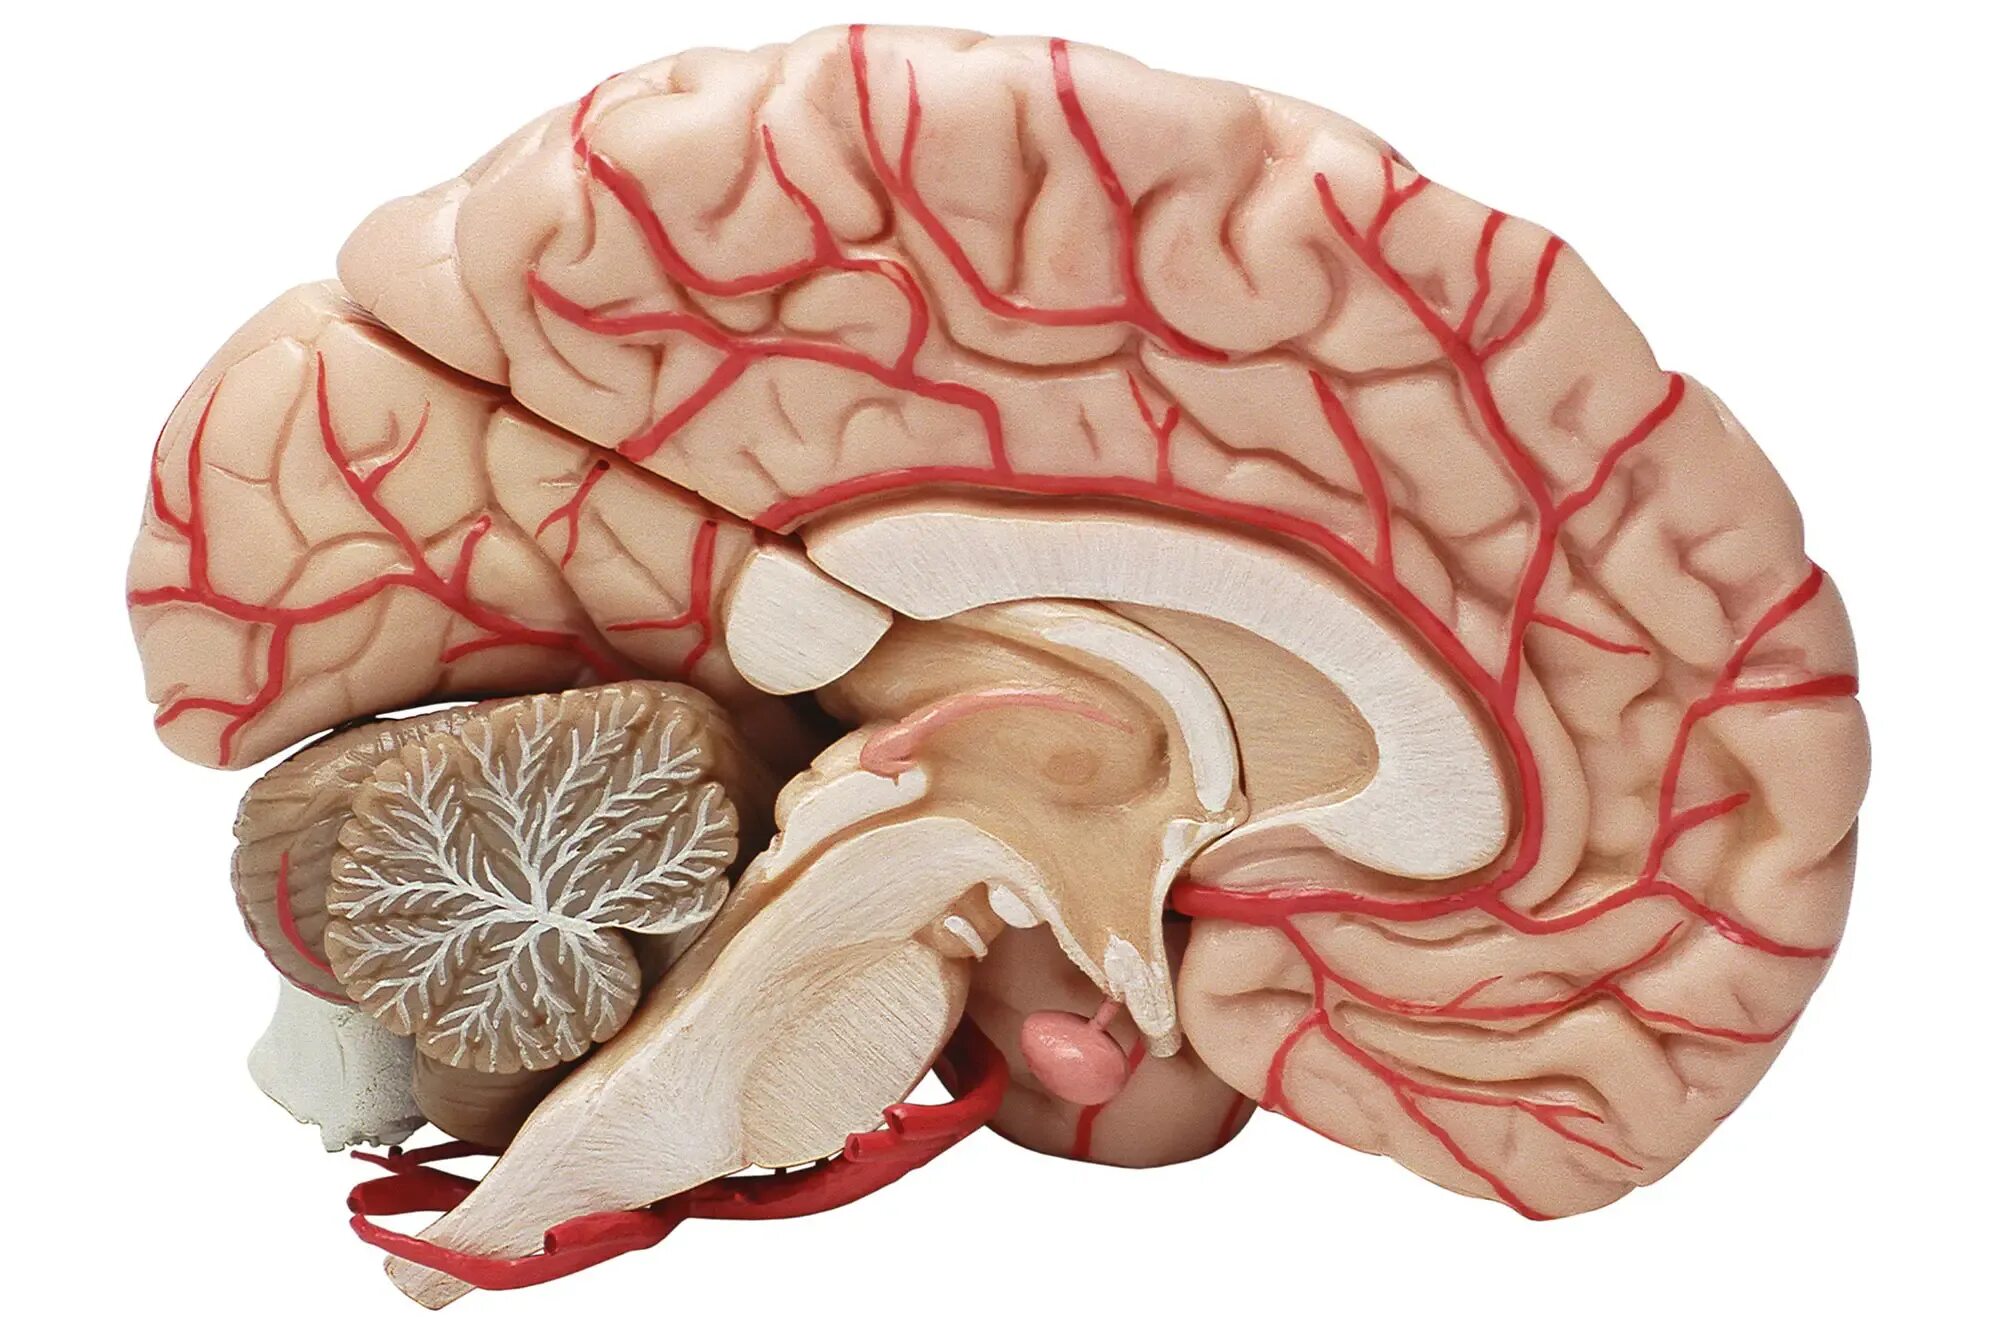 Нервные сосуды головного мозга. Мозолистое тело головного мозга. Кровоток головного мозга.